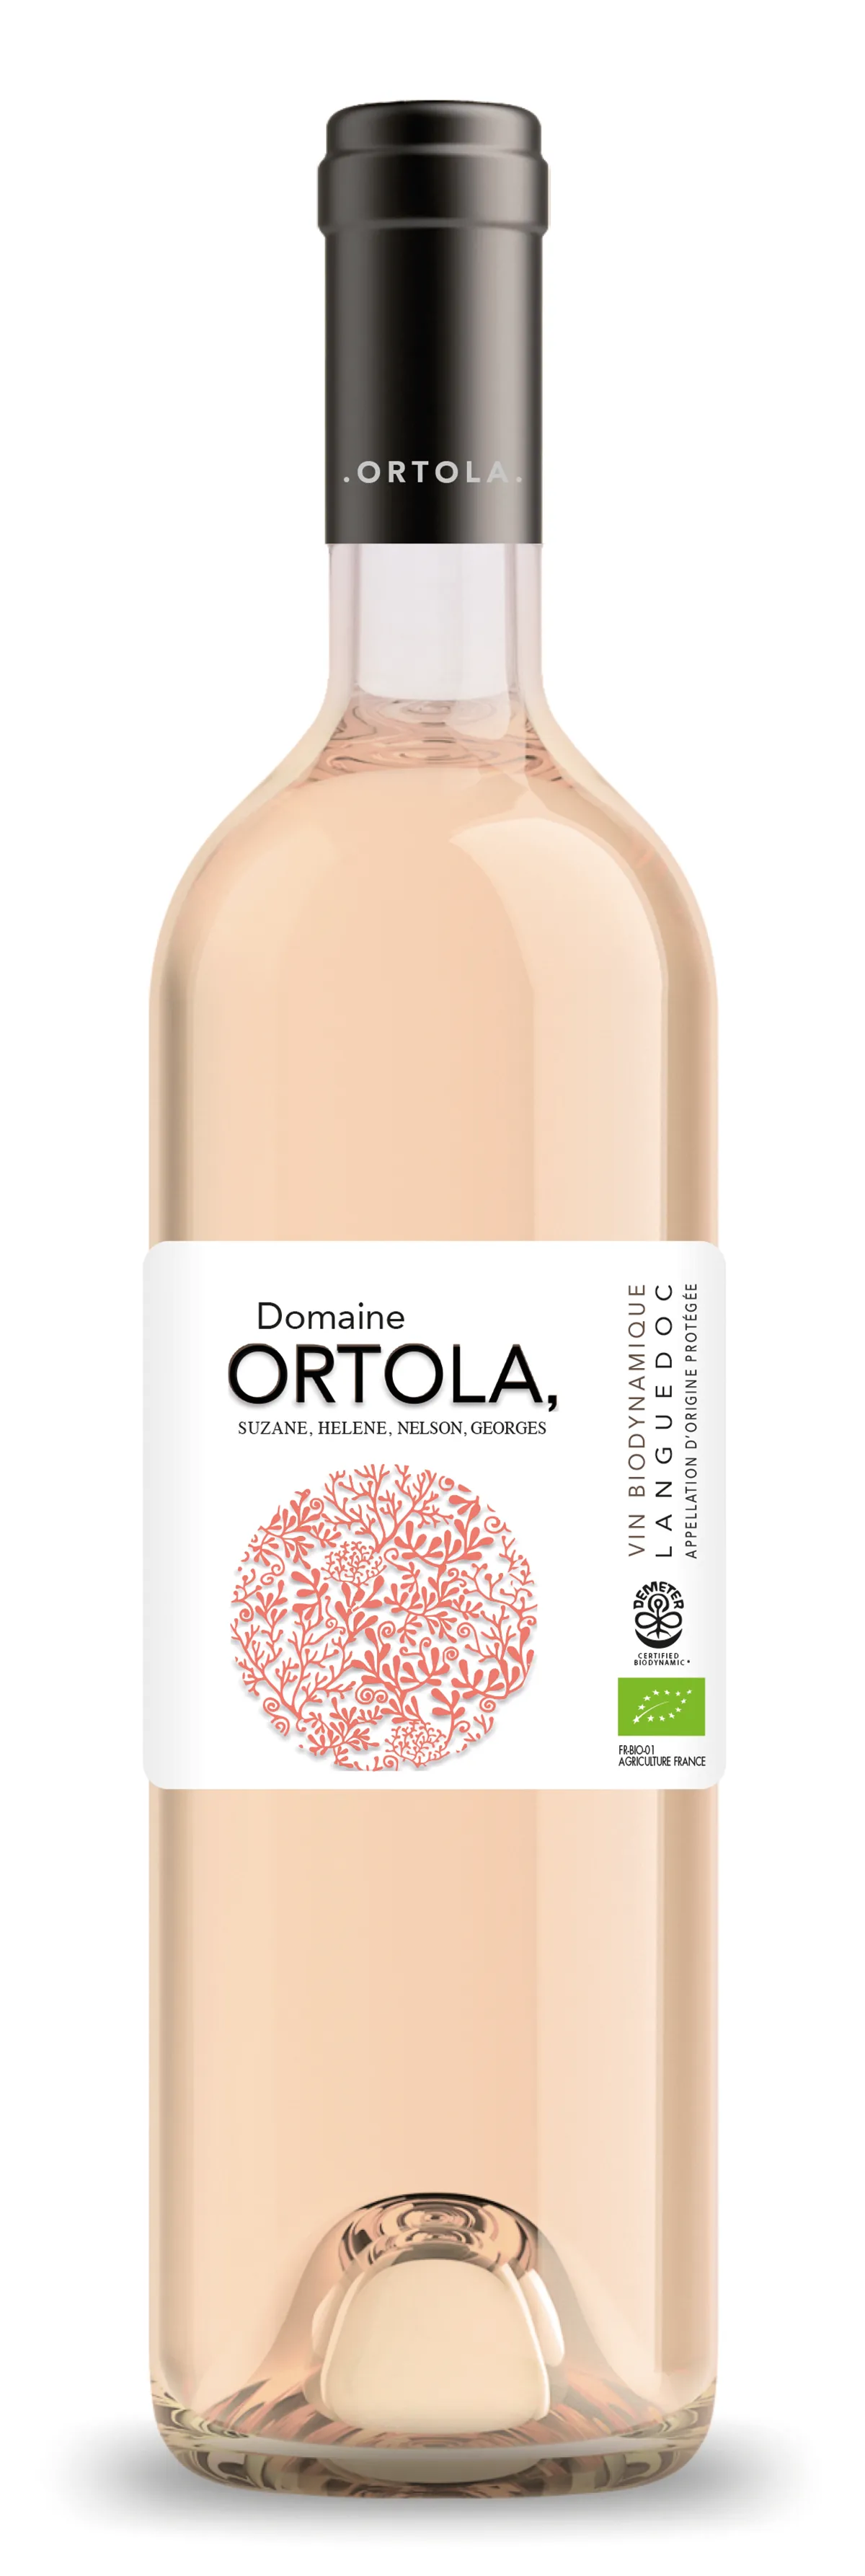 Domaine Ortola Vin rosé 13% bio 75cl - 8012